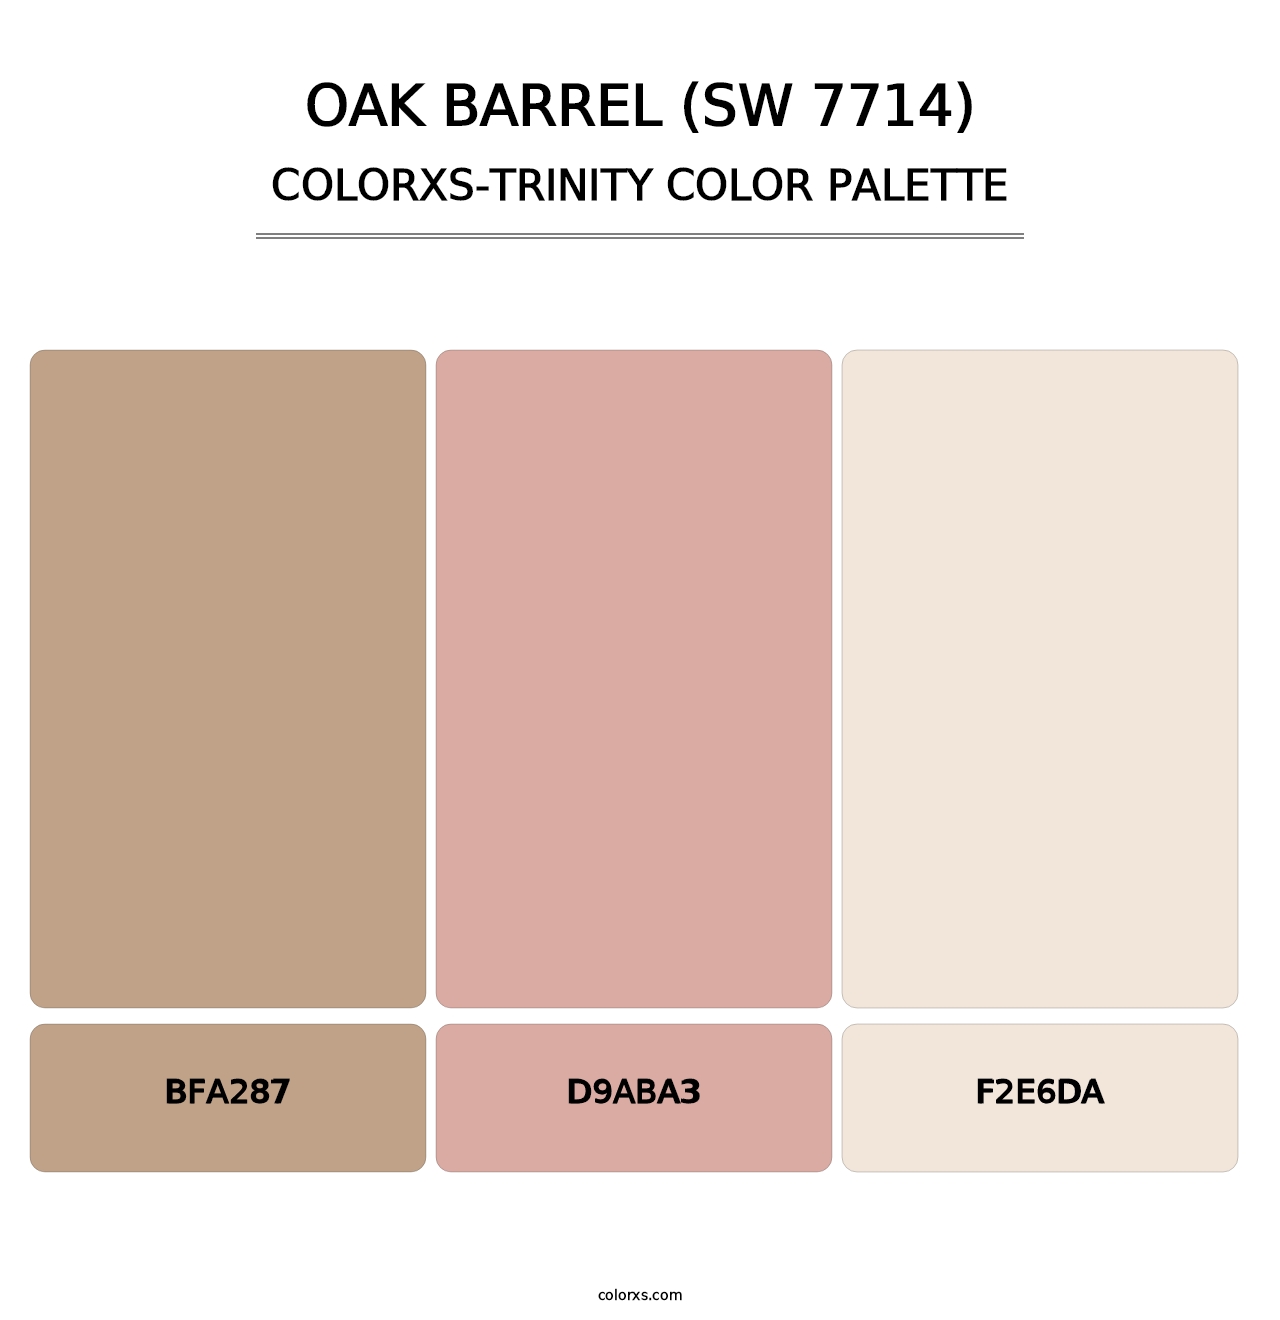 Oak Barrel (SW 7714) - Colorxs Trinity Palette